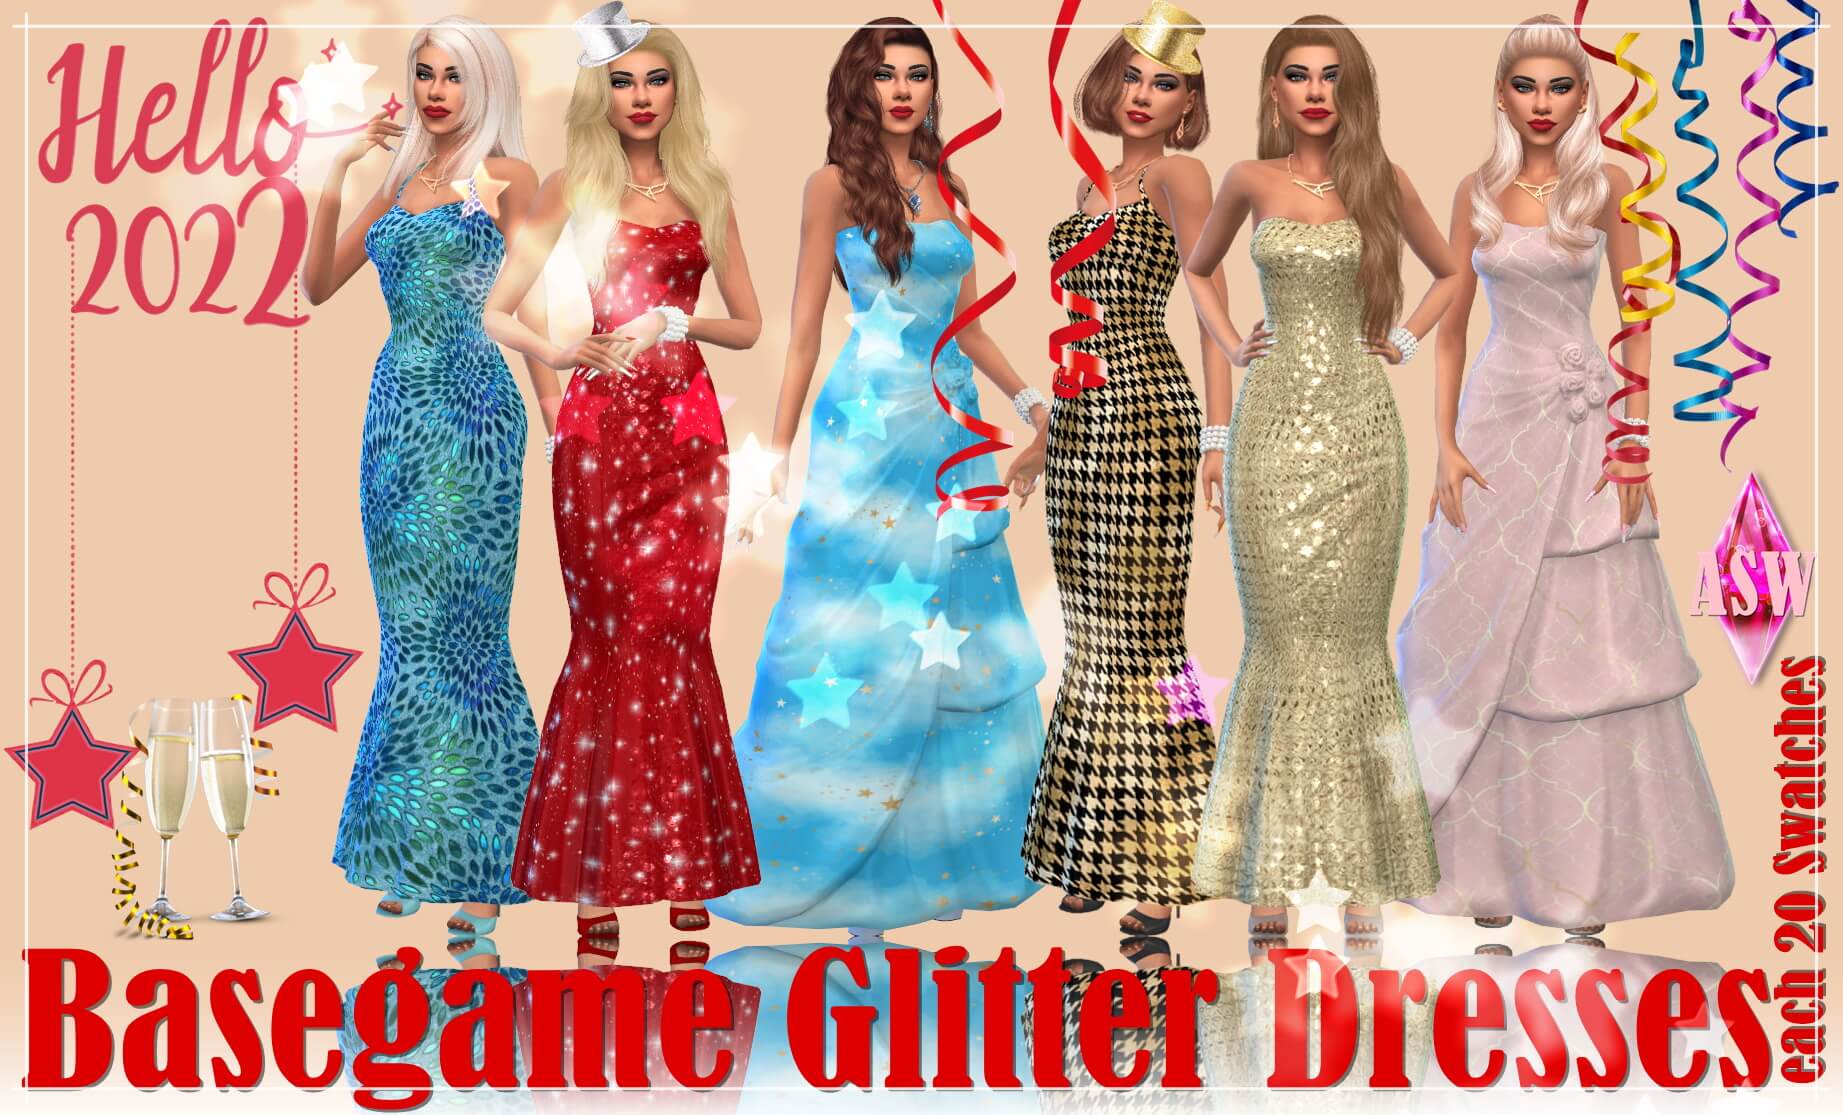 Basegame Glitter Dresses At Annetts Welt The Sims Game